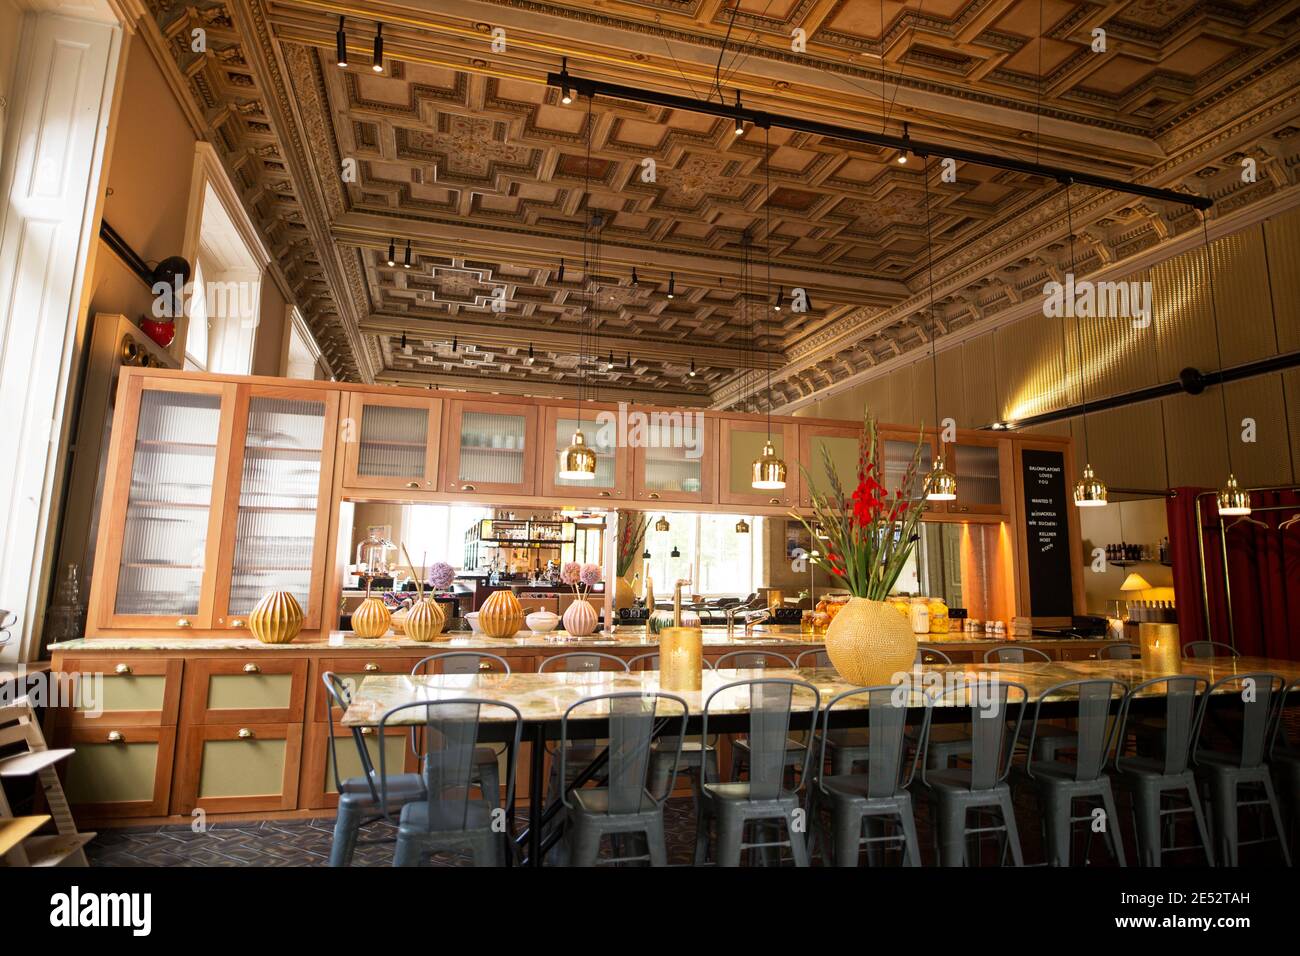 Le café-restaurant du Musée des Arts appliqués (MAK) à Vienne, Autriche. Banque D'Images